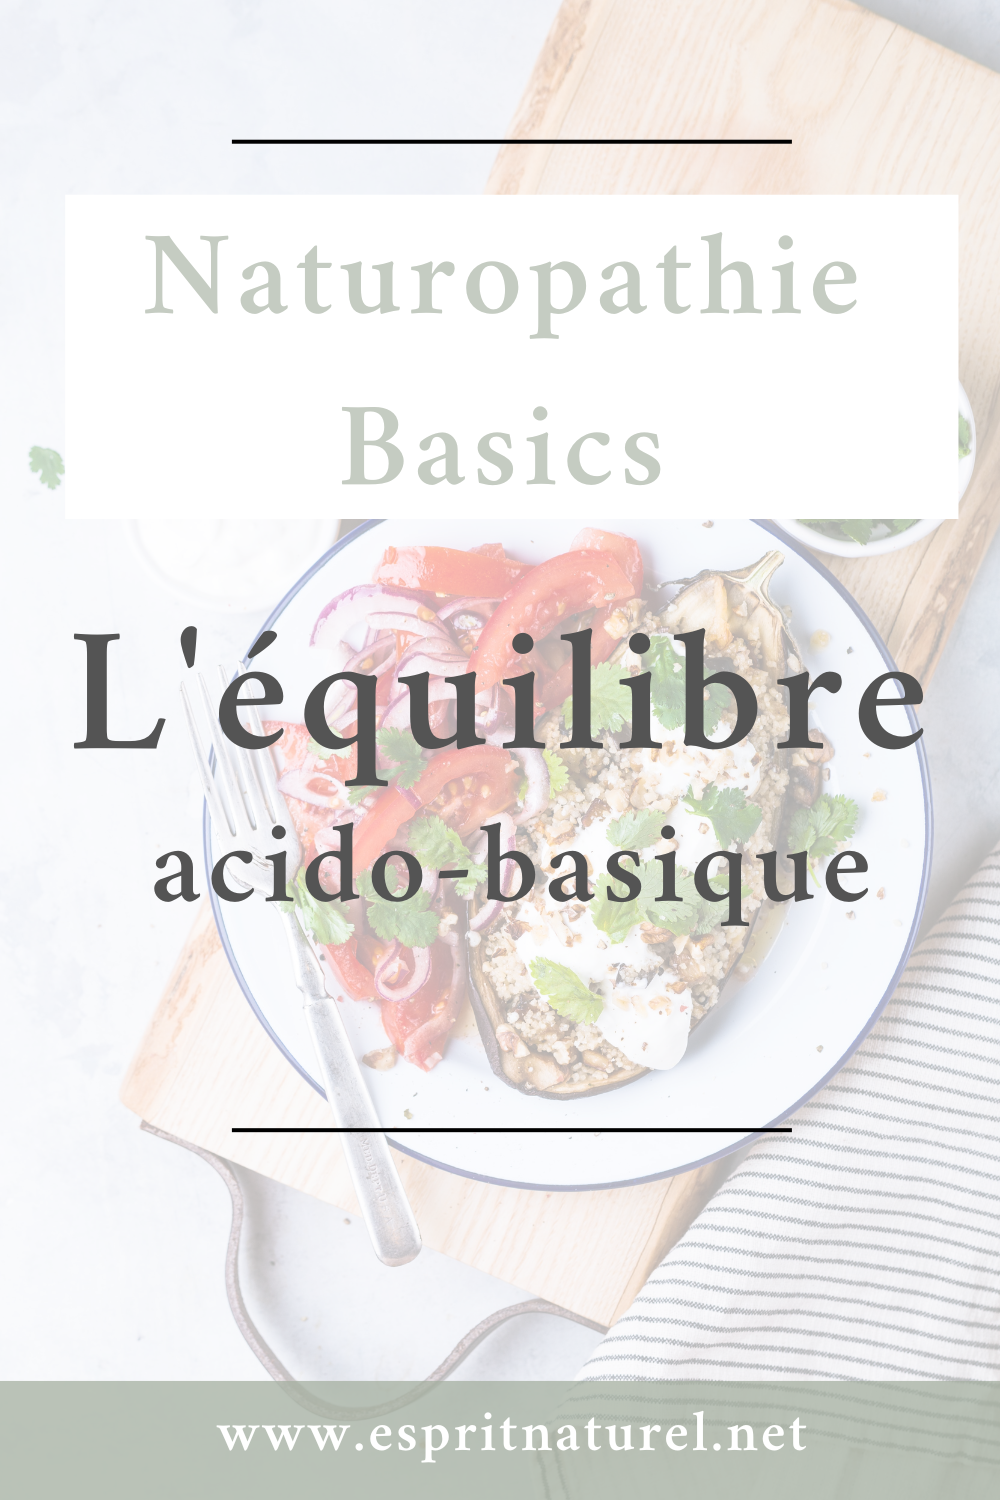 Naturopathie basics: Tout savoir sur l'équilibre acido-basique